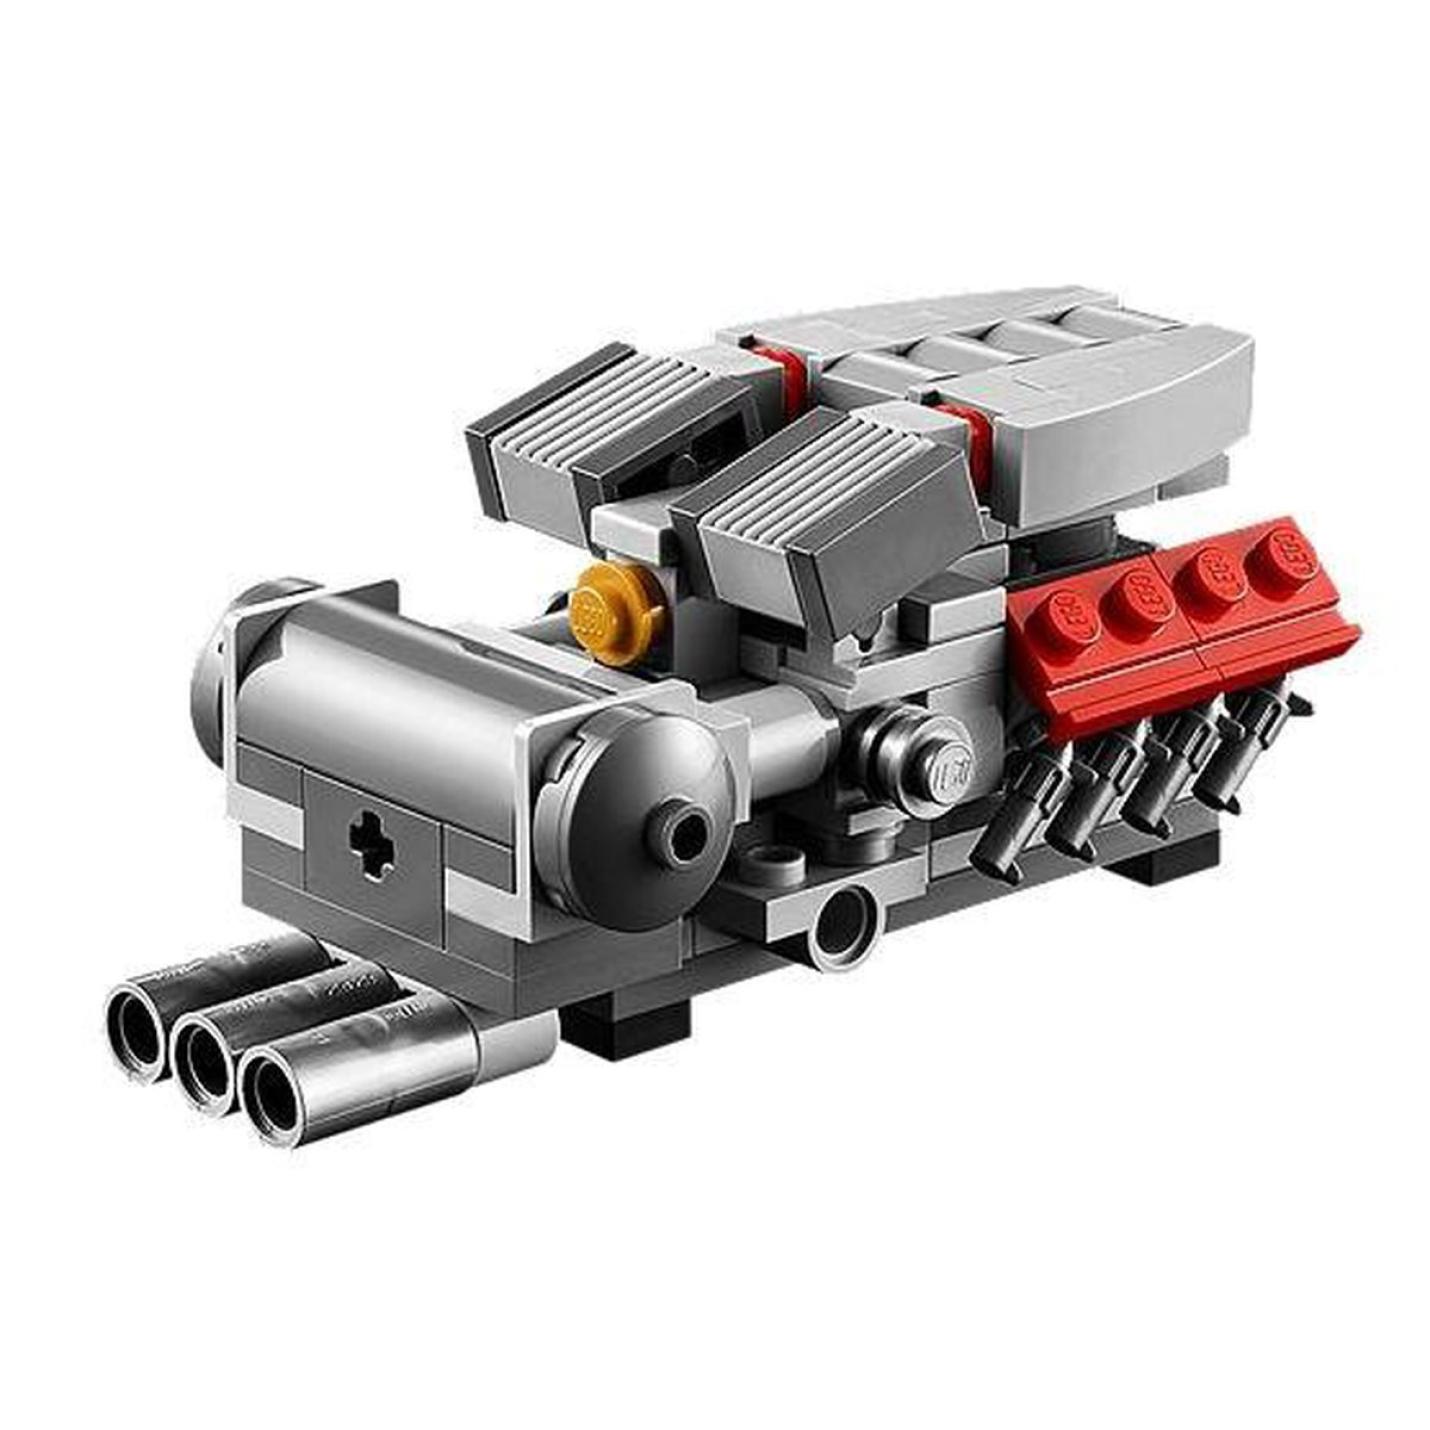 LEGO Creator Expert Ferrari F40 - 10248 15